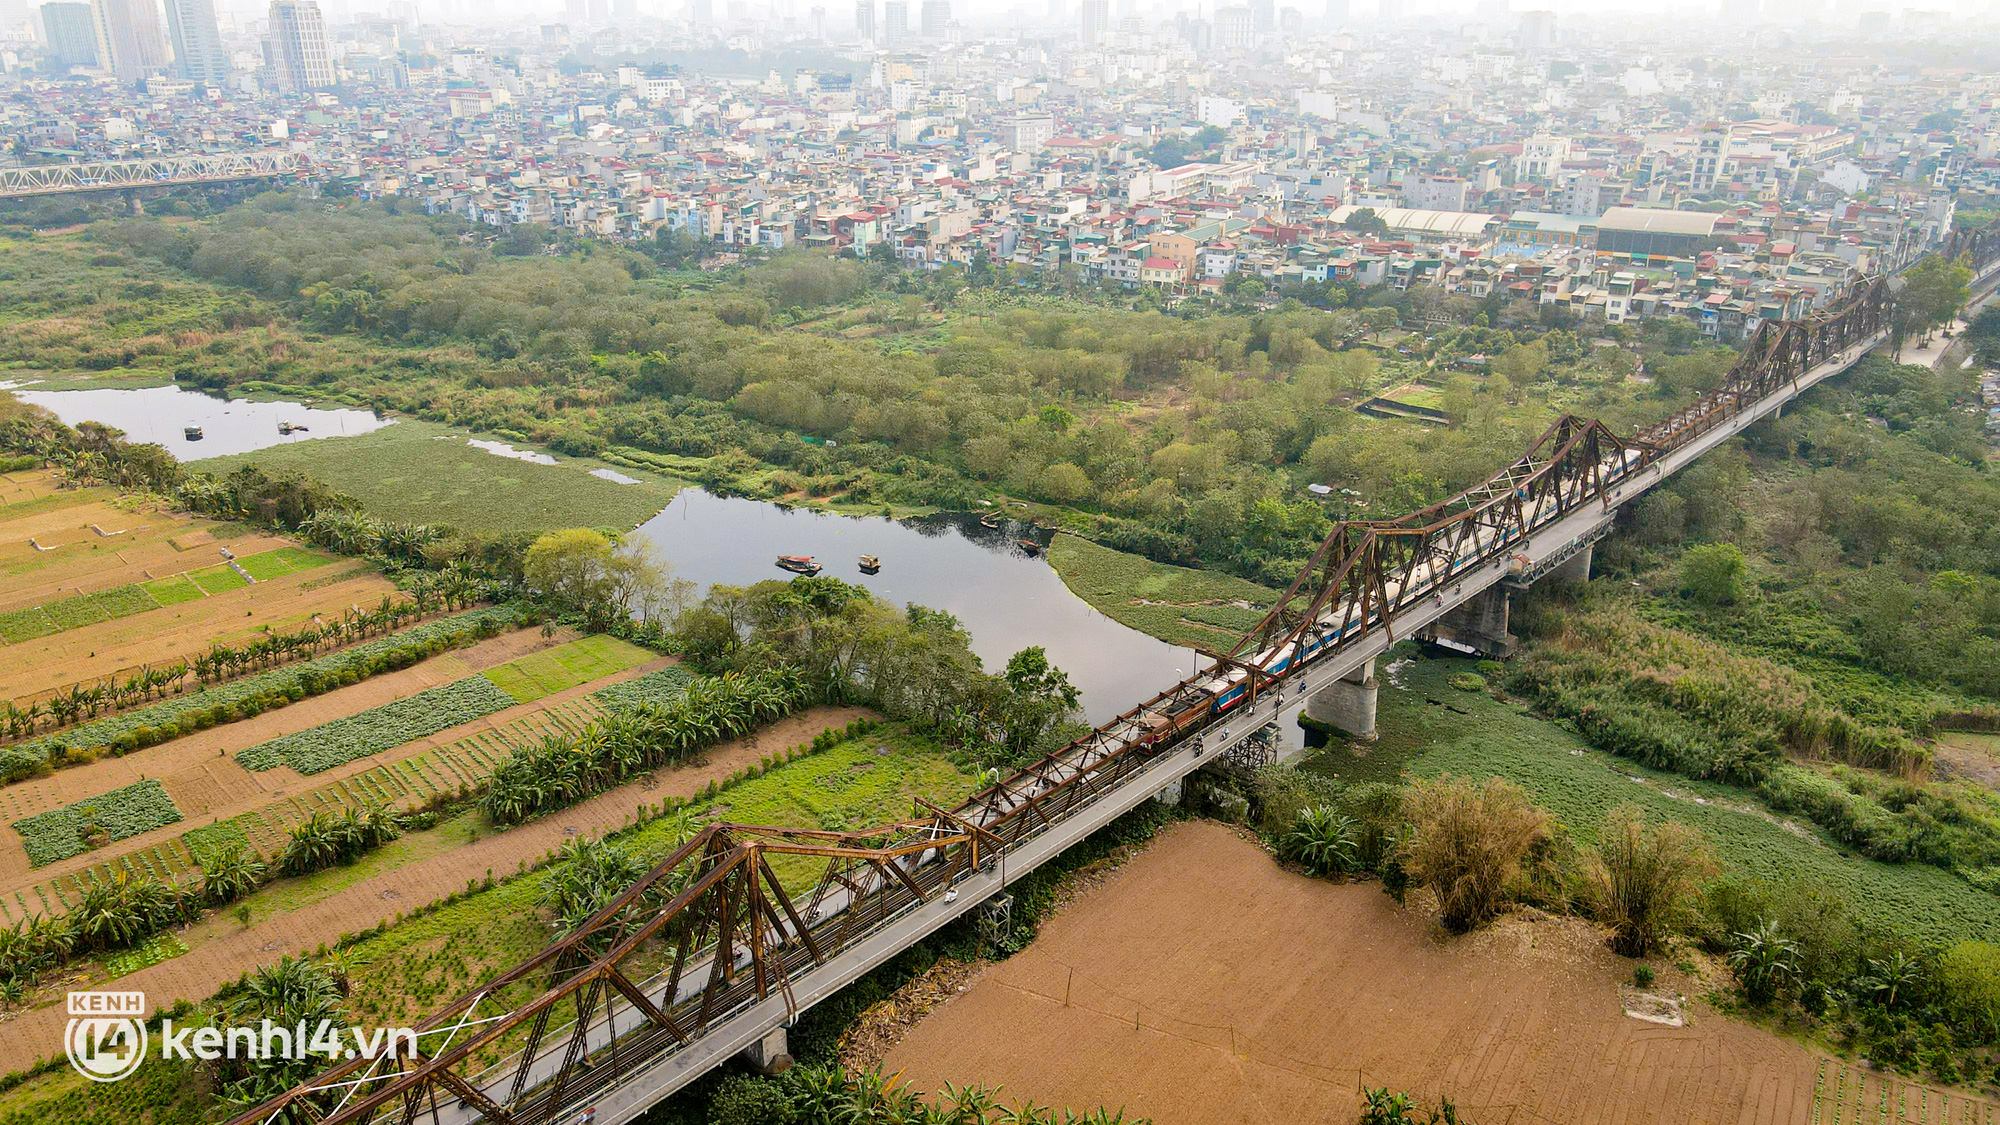 Hà Nội: Cận cảnh vẻ đẹp hoang sơ của bãi giữa sông Hồng được đề xuất cải tạo thành công viên - Ảnh 2.